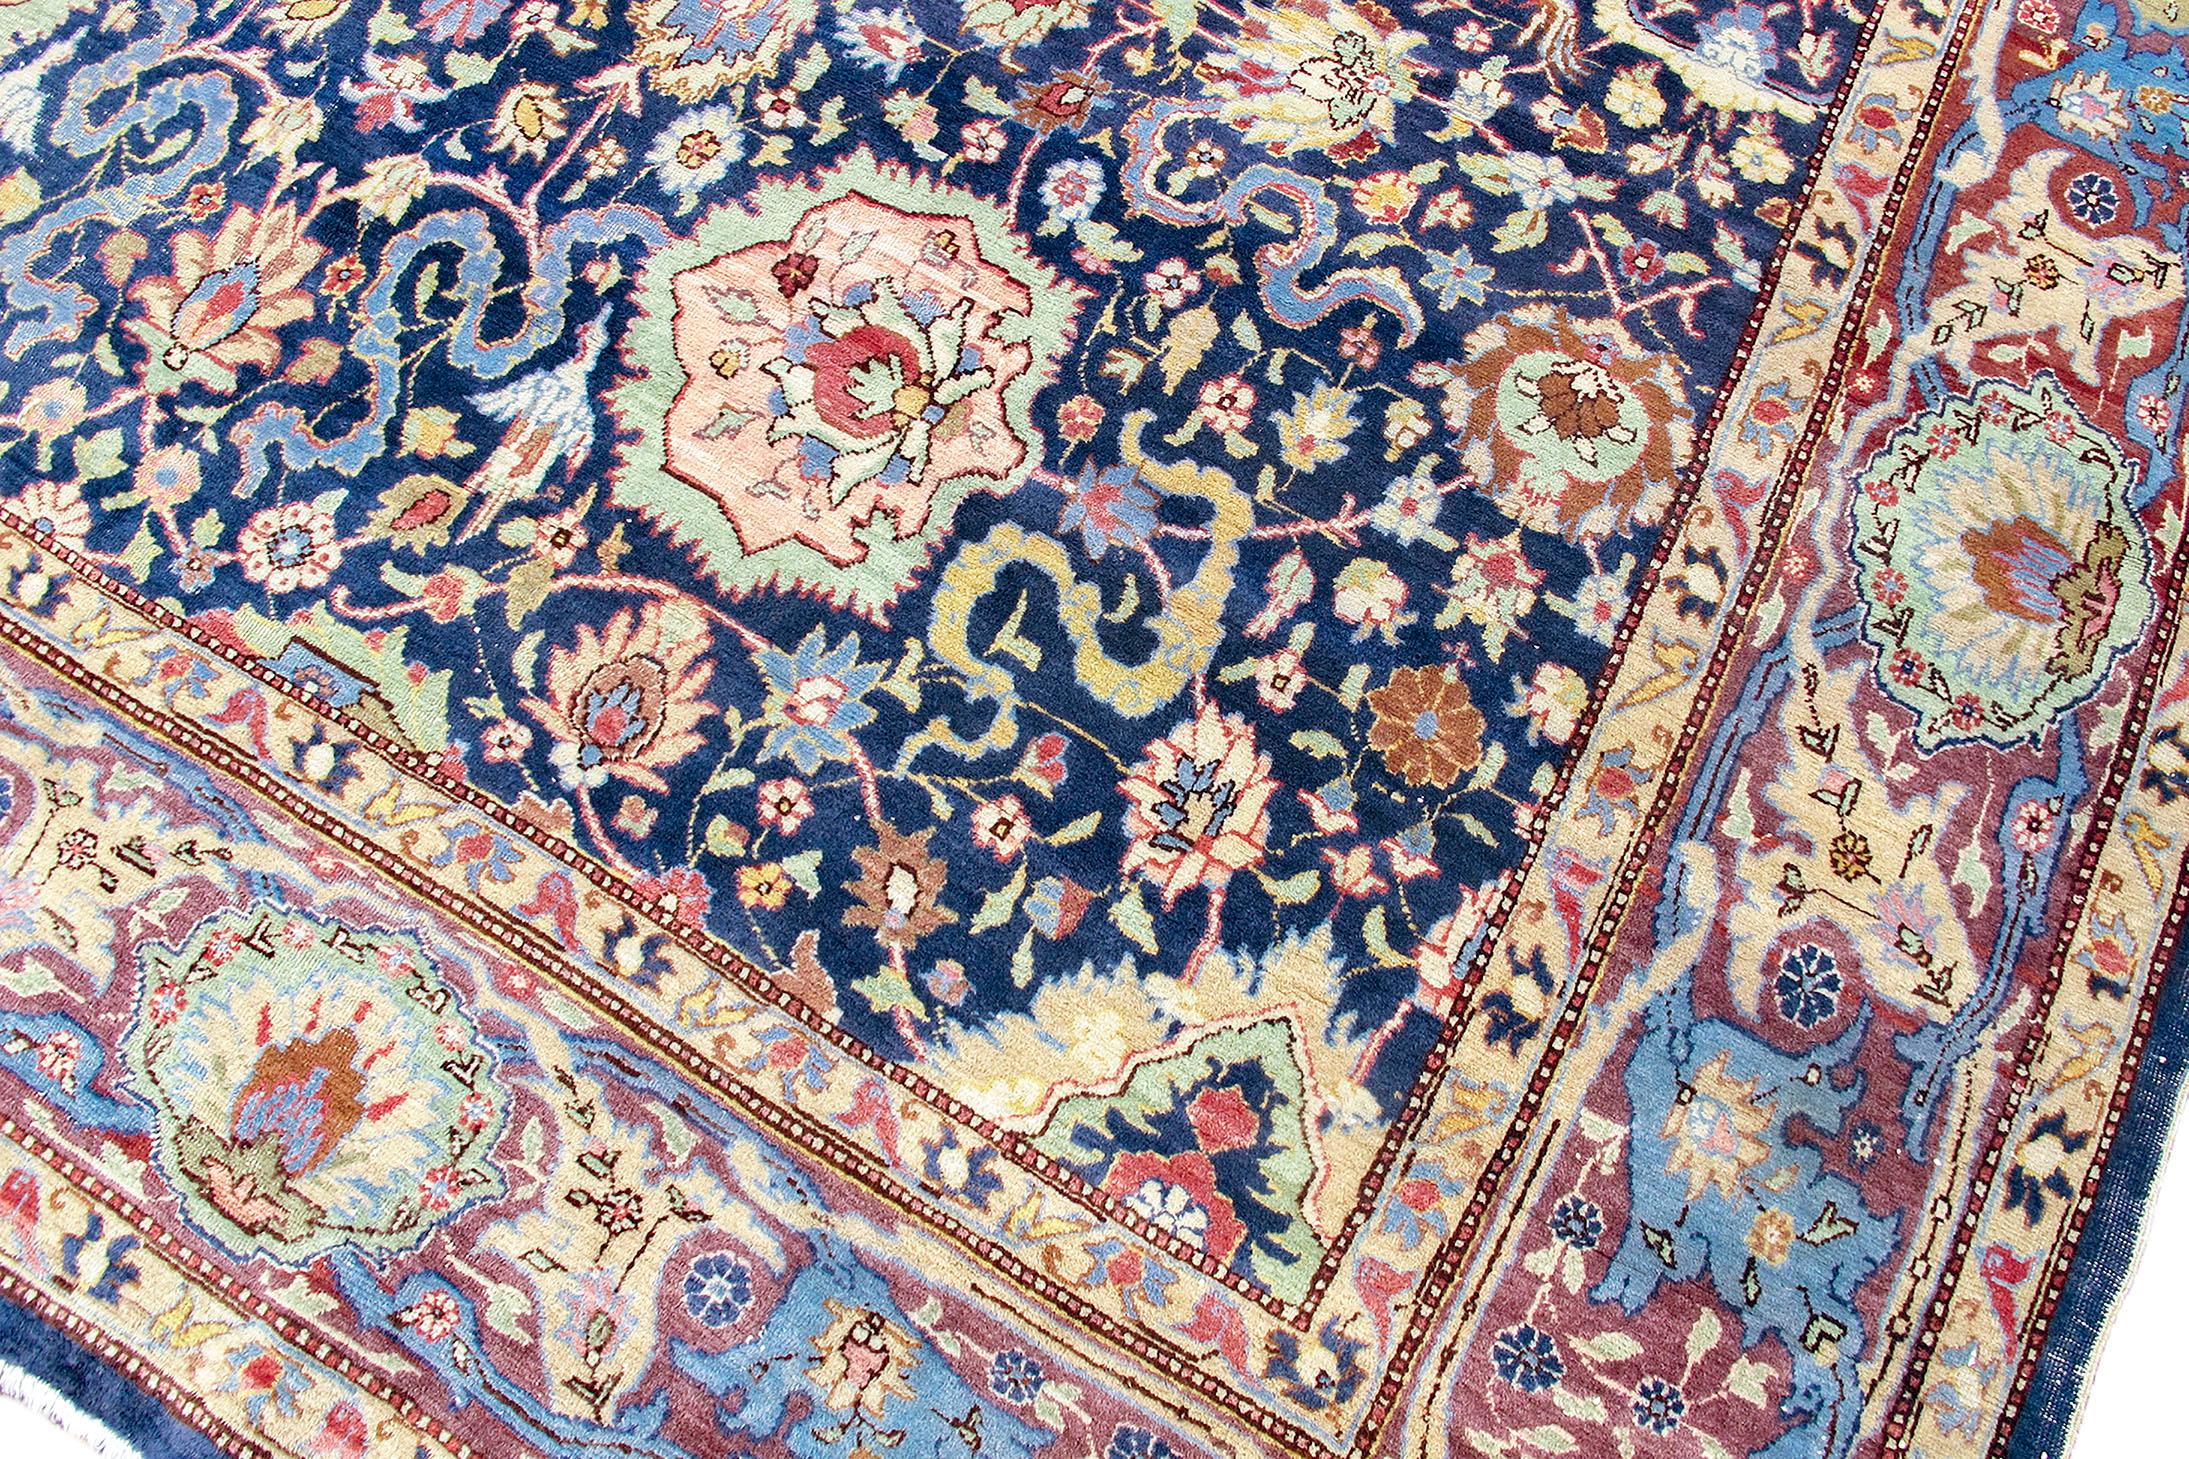 Tapis persan ancien de Hereke, vers 1900

Ce tapis Hereke surdimensionné, originaire de Turquie, dessine un motif complexe de palmettes et de bandes de nuages à l'intérieur d'un treillis sur un fond indigo. Les pièces de Derive du début du siècle